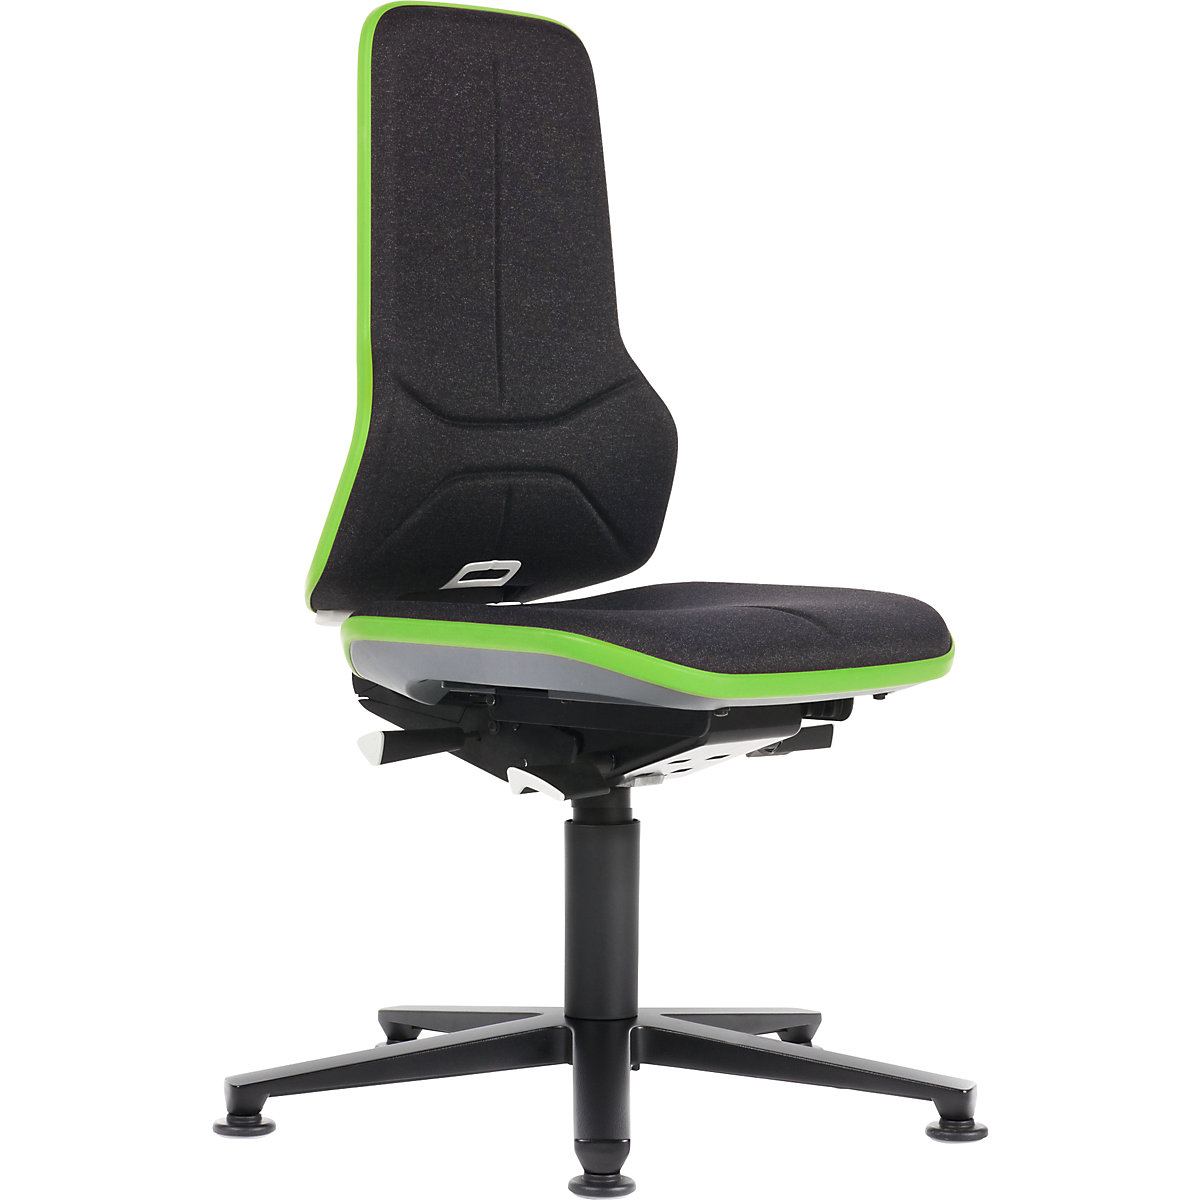 Pracovní otočná židle NEON, patky – bimos, permanentní kontakt, látka, zelený flexibilní pás-18